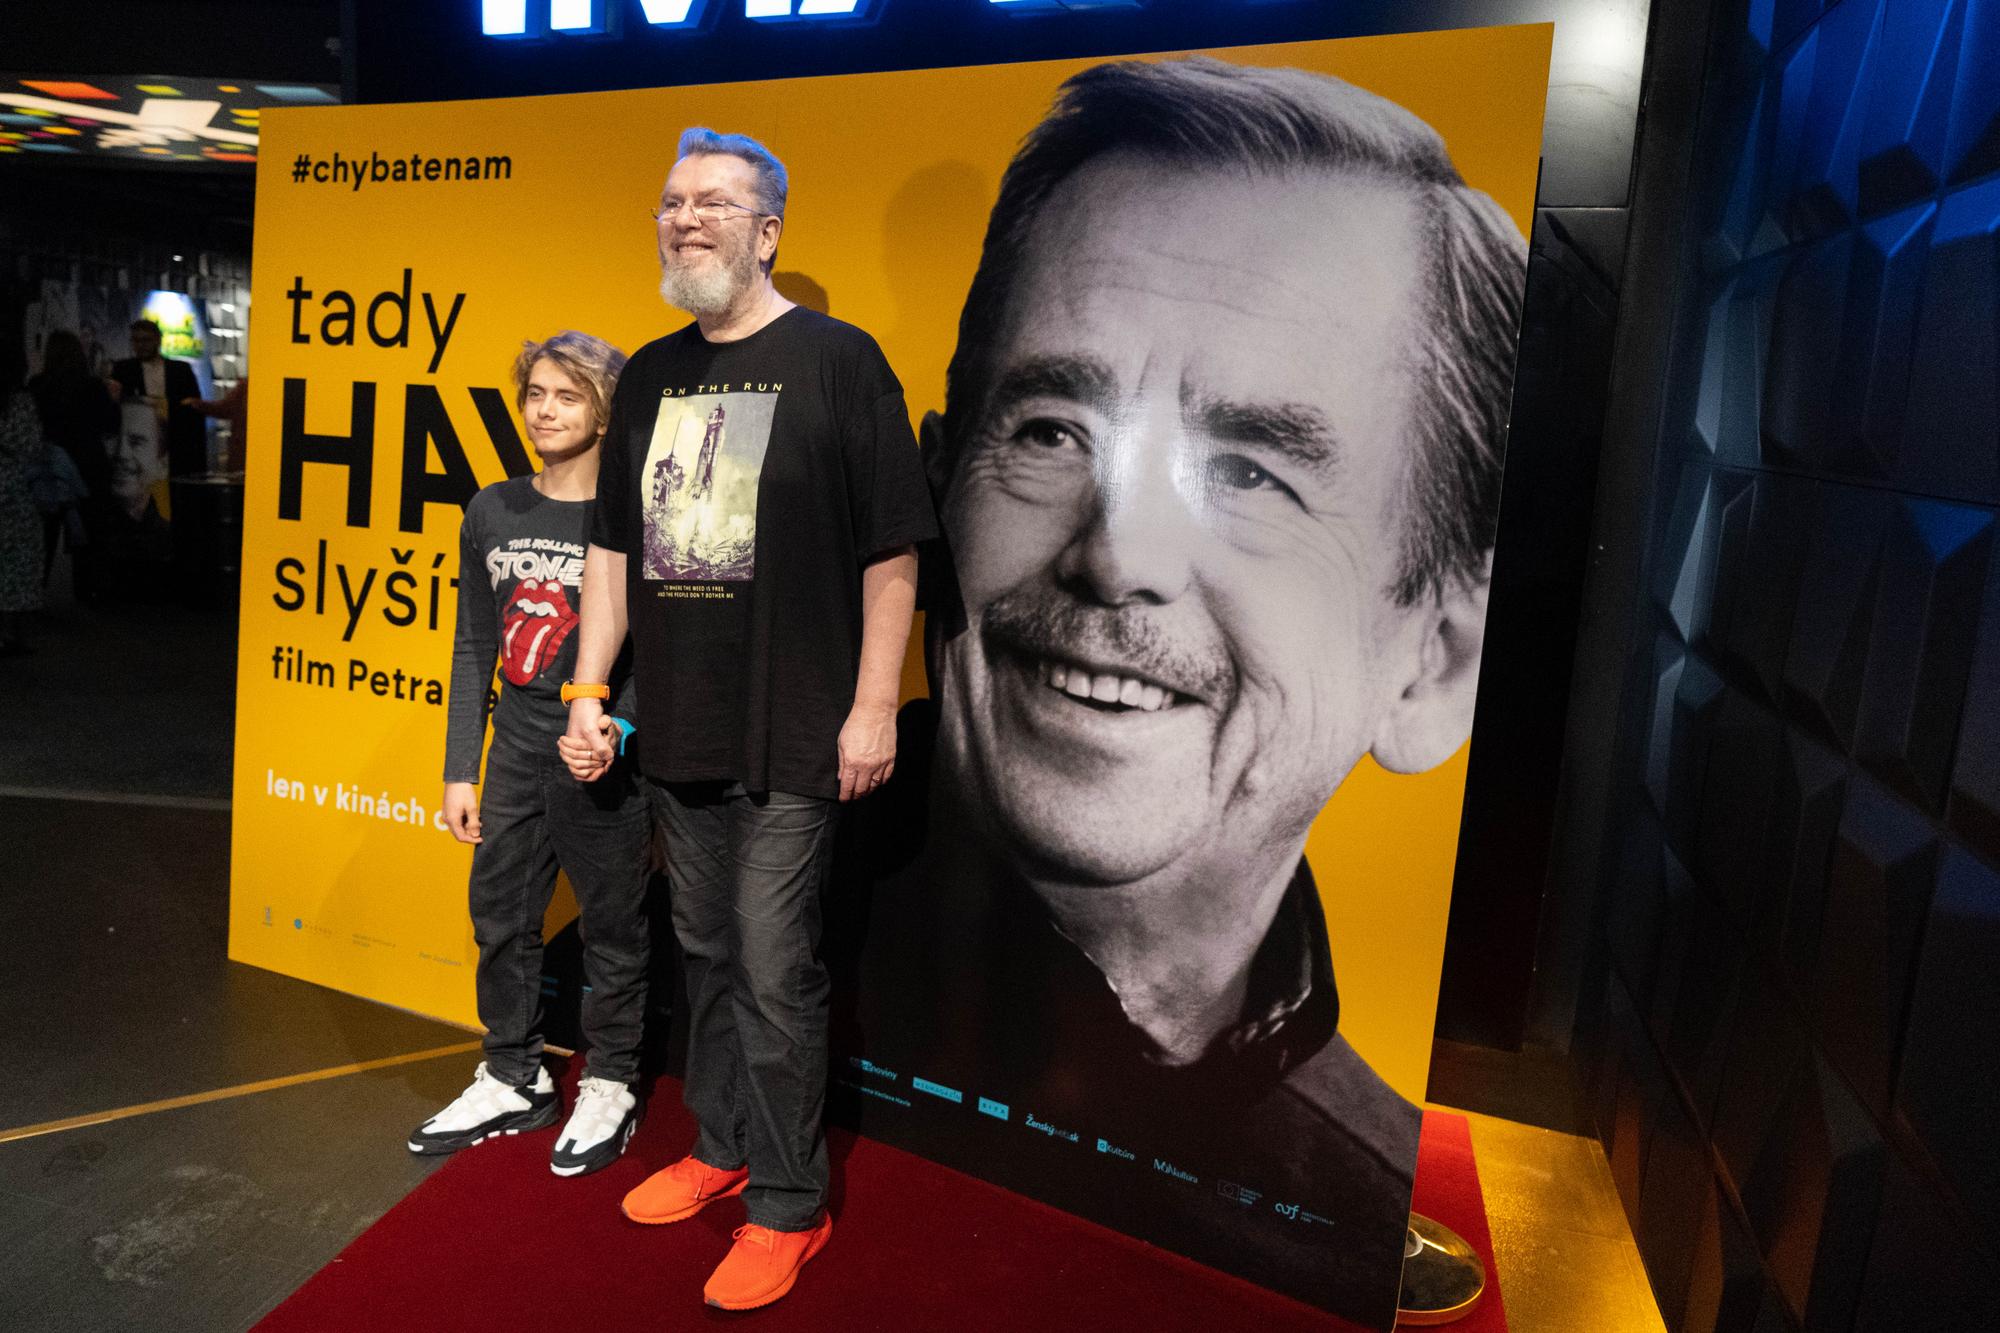 Premiéra českého dokumentárneho filmu Tady Havel, slyšíte mě? - Richard Müller so synom